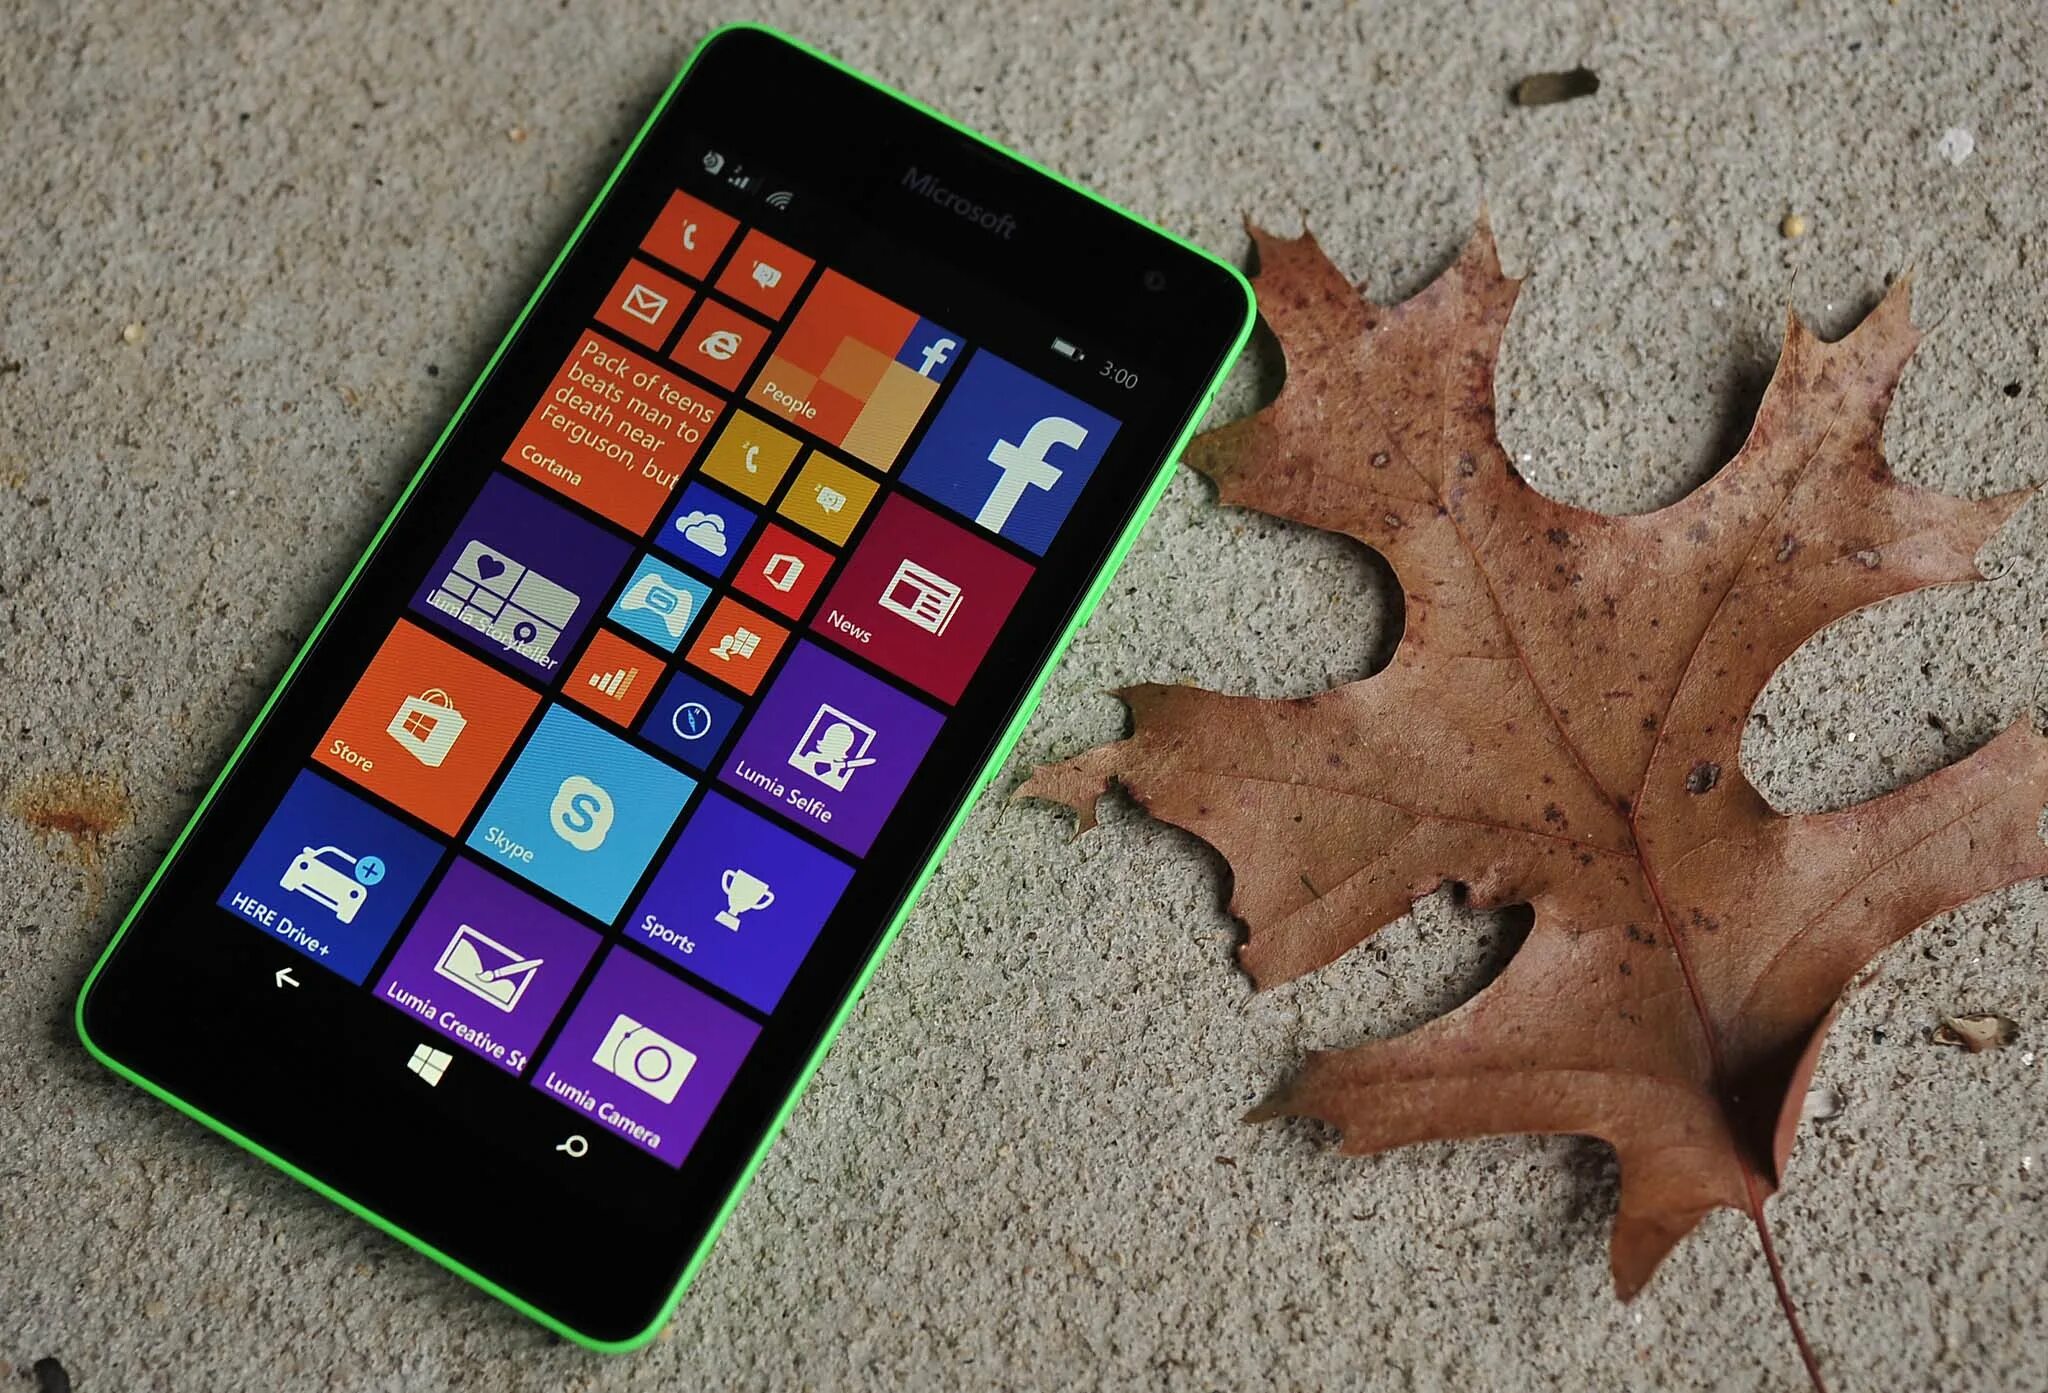 Microsoft 535. Microsoft Lumia 535. Lumia 535 Dual SIM. Нокиа люмия 535. Microsoft Lumia 535 Dual SIM.